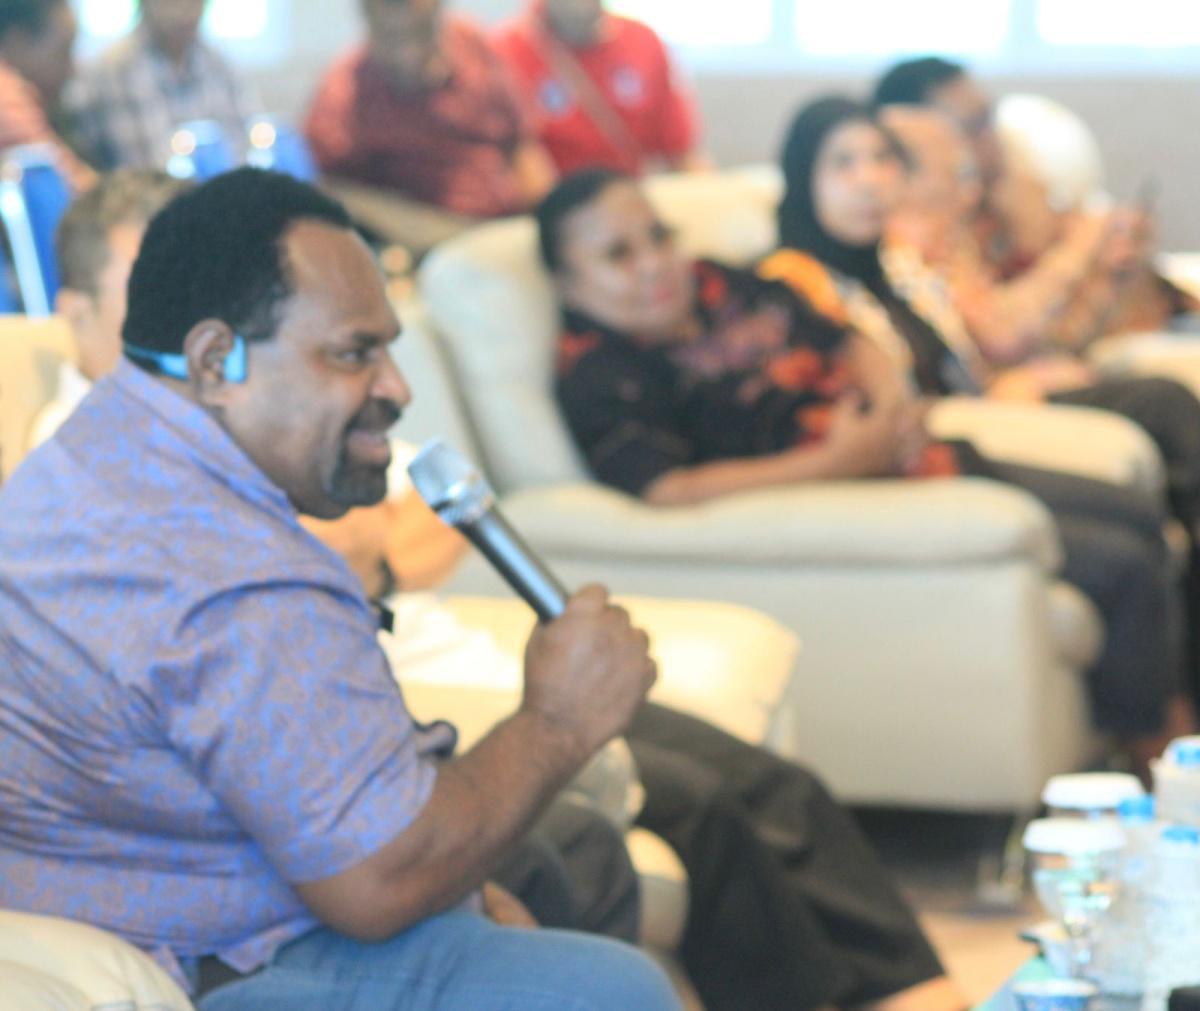 PT. Garuda Indonesia Melakukan Sosialisasi Program Perjalanan Dinas Di Lingkungan Pemerintah Provinsi Papua